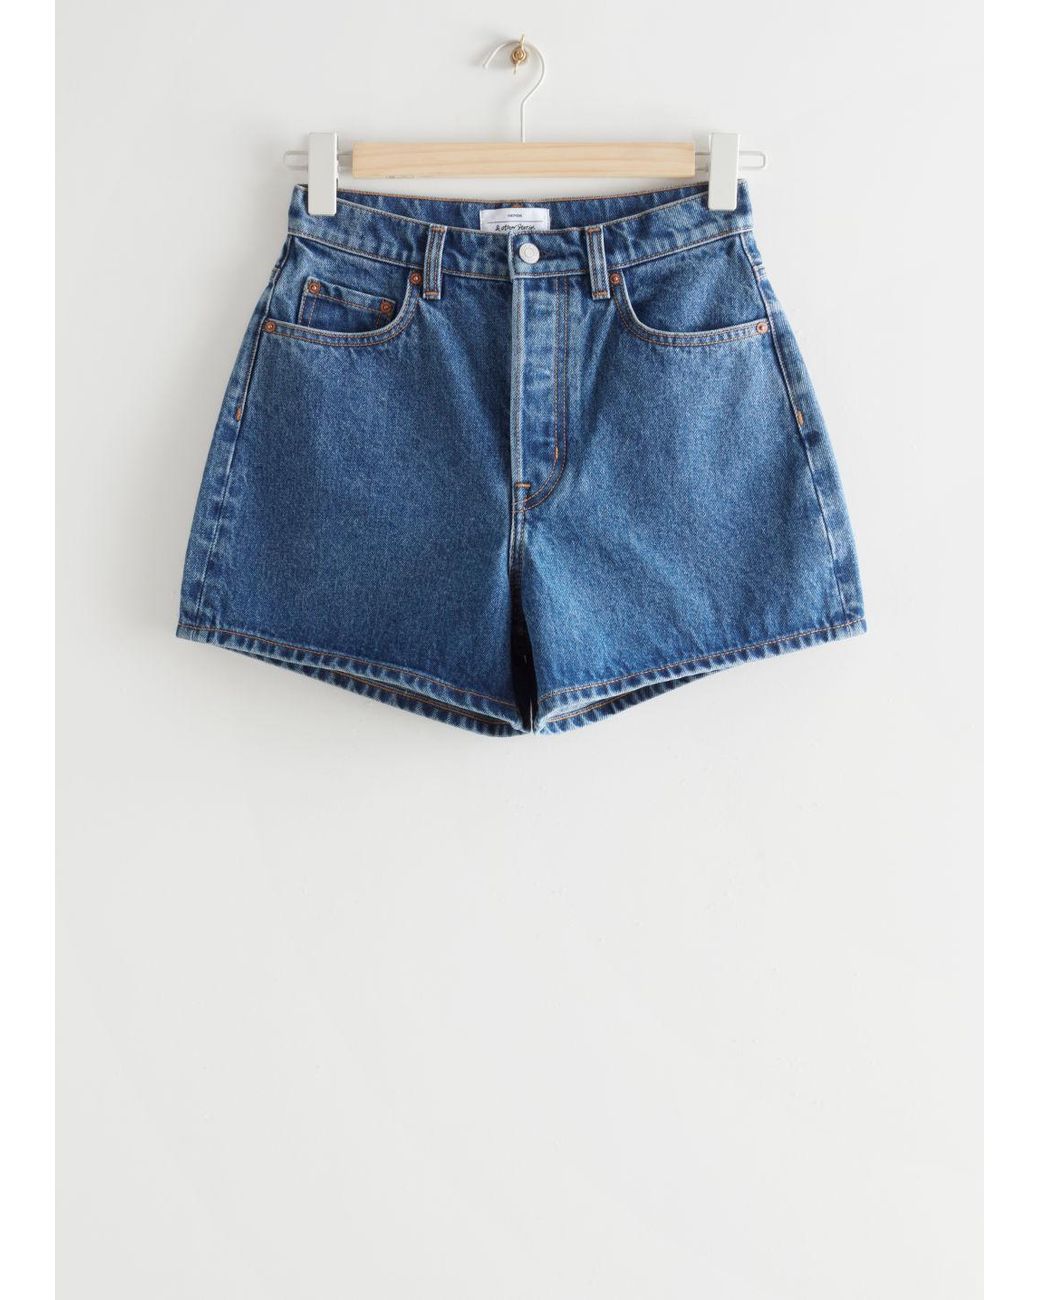 & Other Stories Baumwolle forever jeansshorts aus baumwolle in Blau Damen Bekleidung Kurze Hosen Jeans-Shorts und Denim-Shorts 